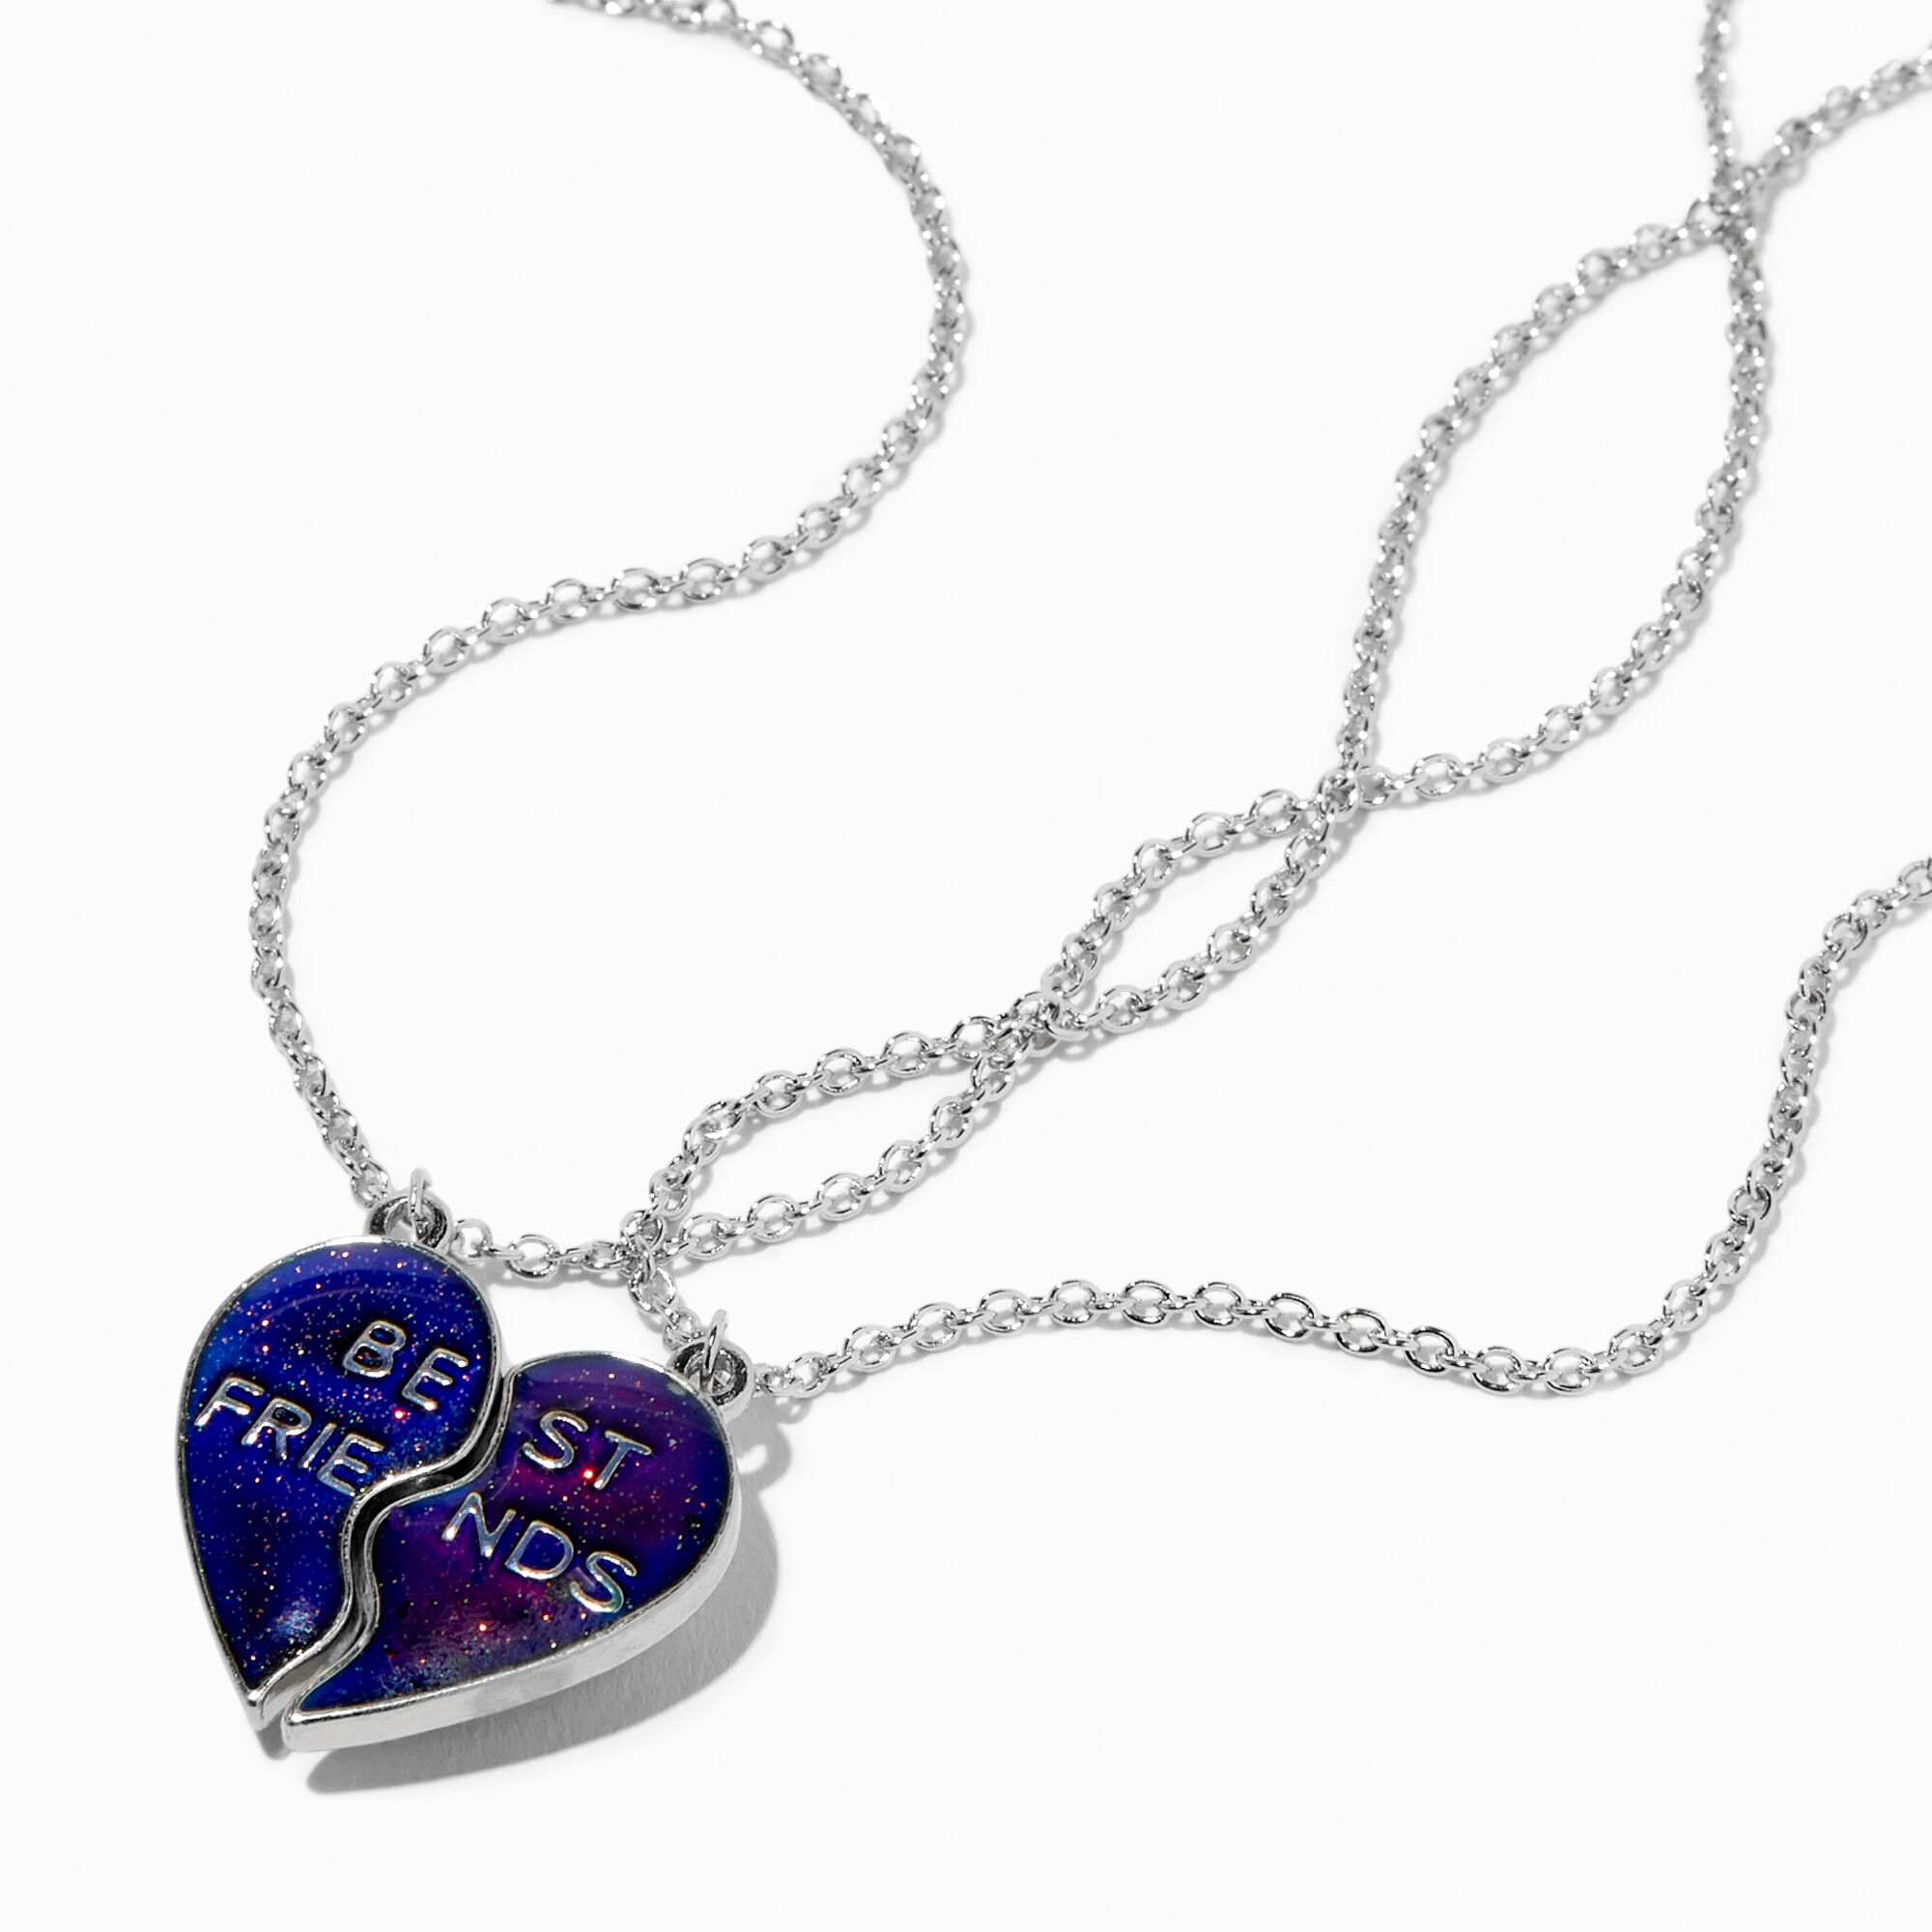 Best Friends Bubble Tea Pendant Necklaces - 2 Pack | Bff necklaces, Tea  jewelry, Best friend necklaces